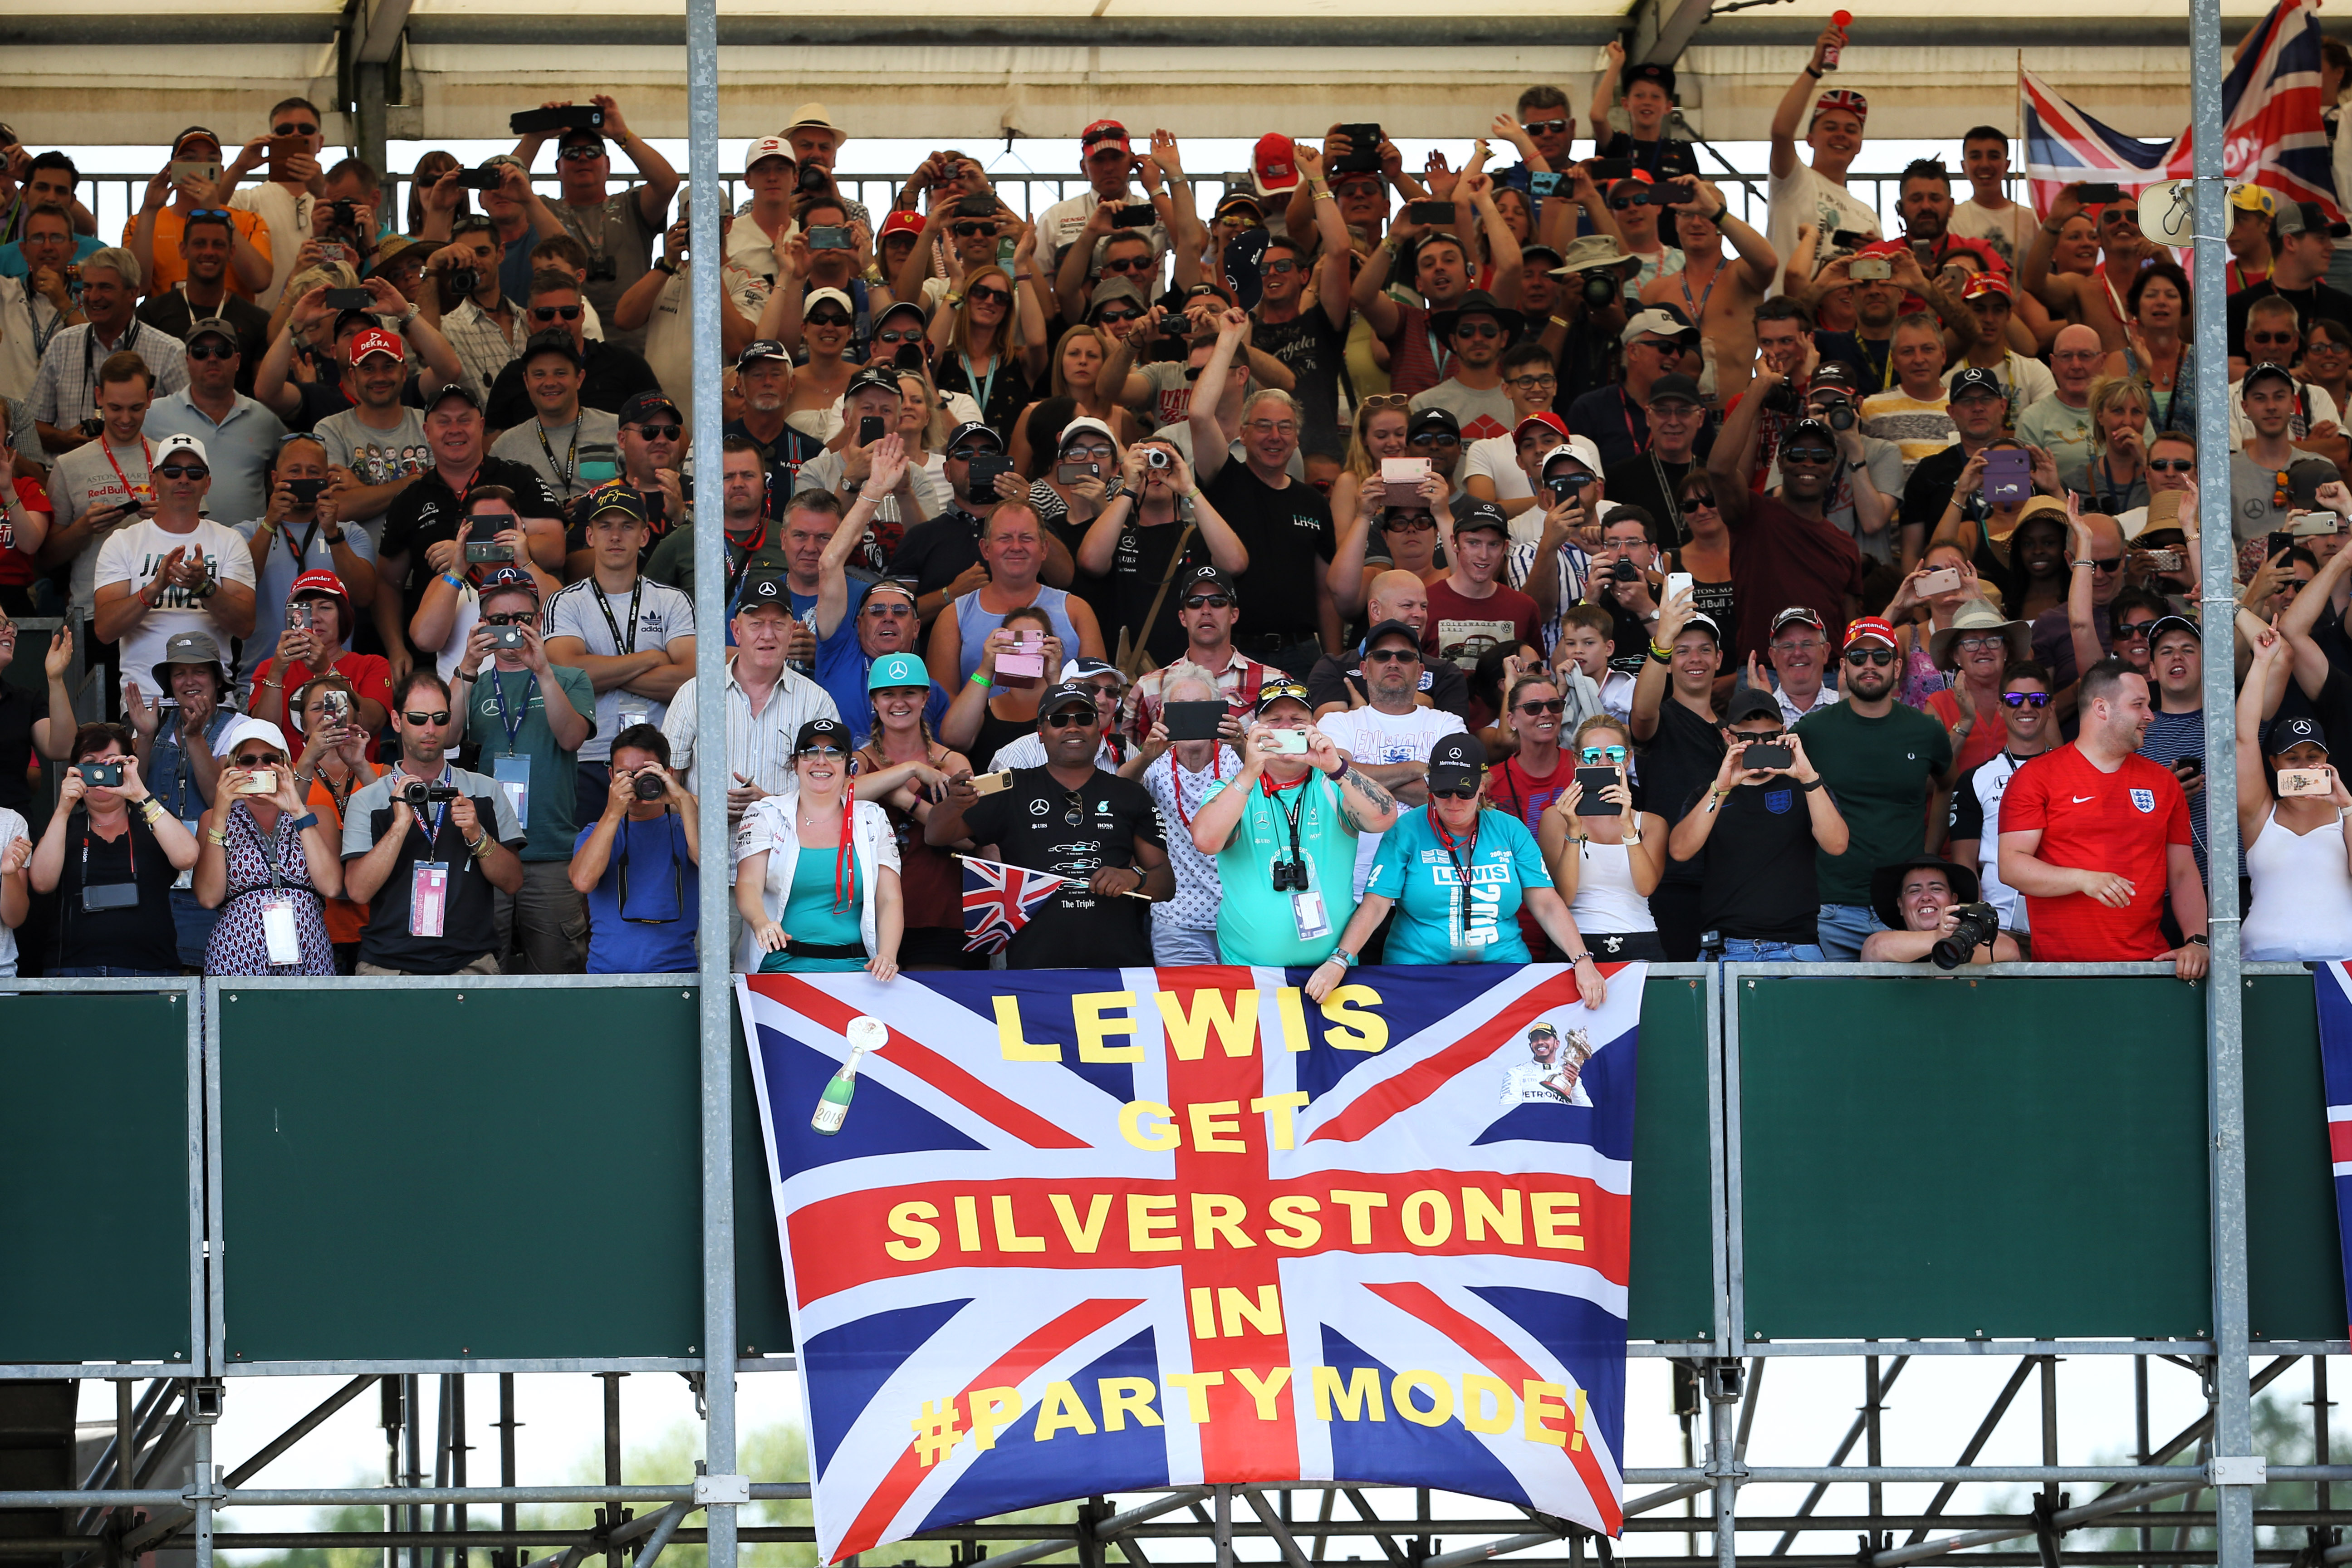 Silverstone fans